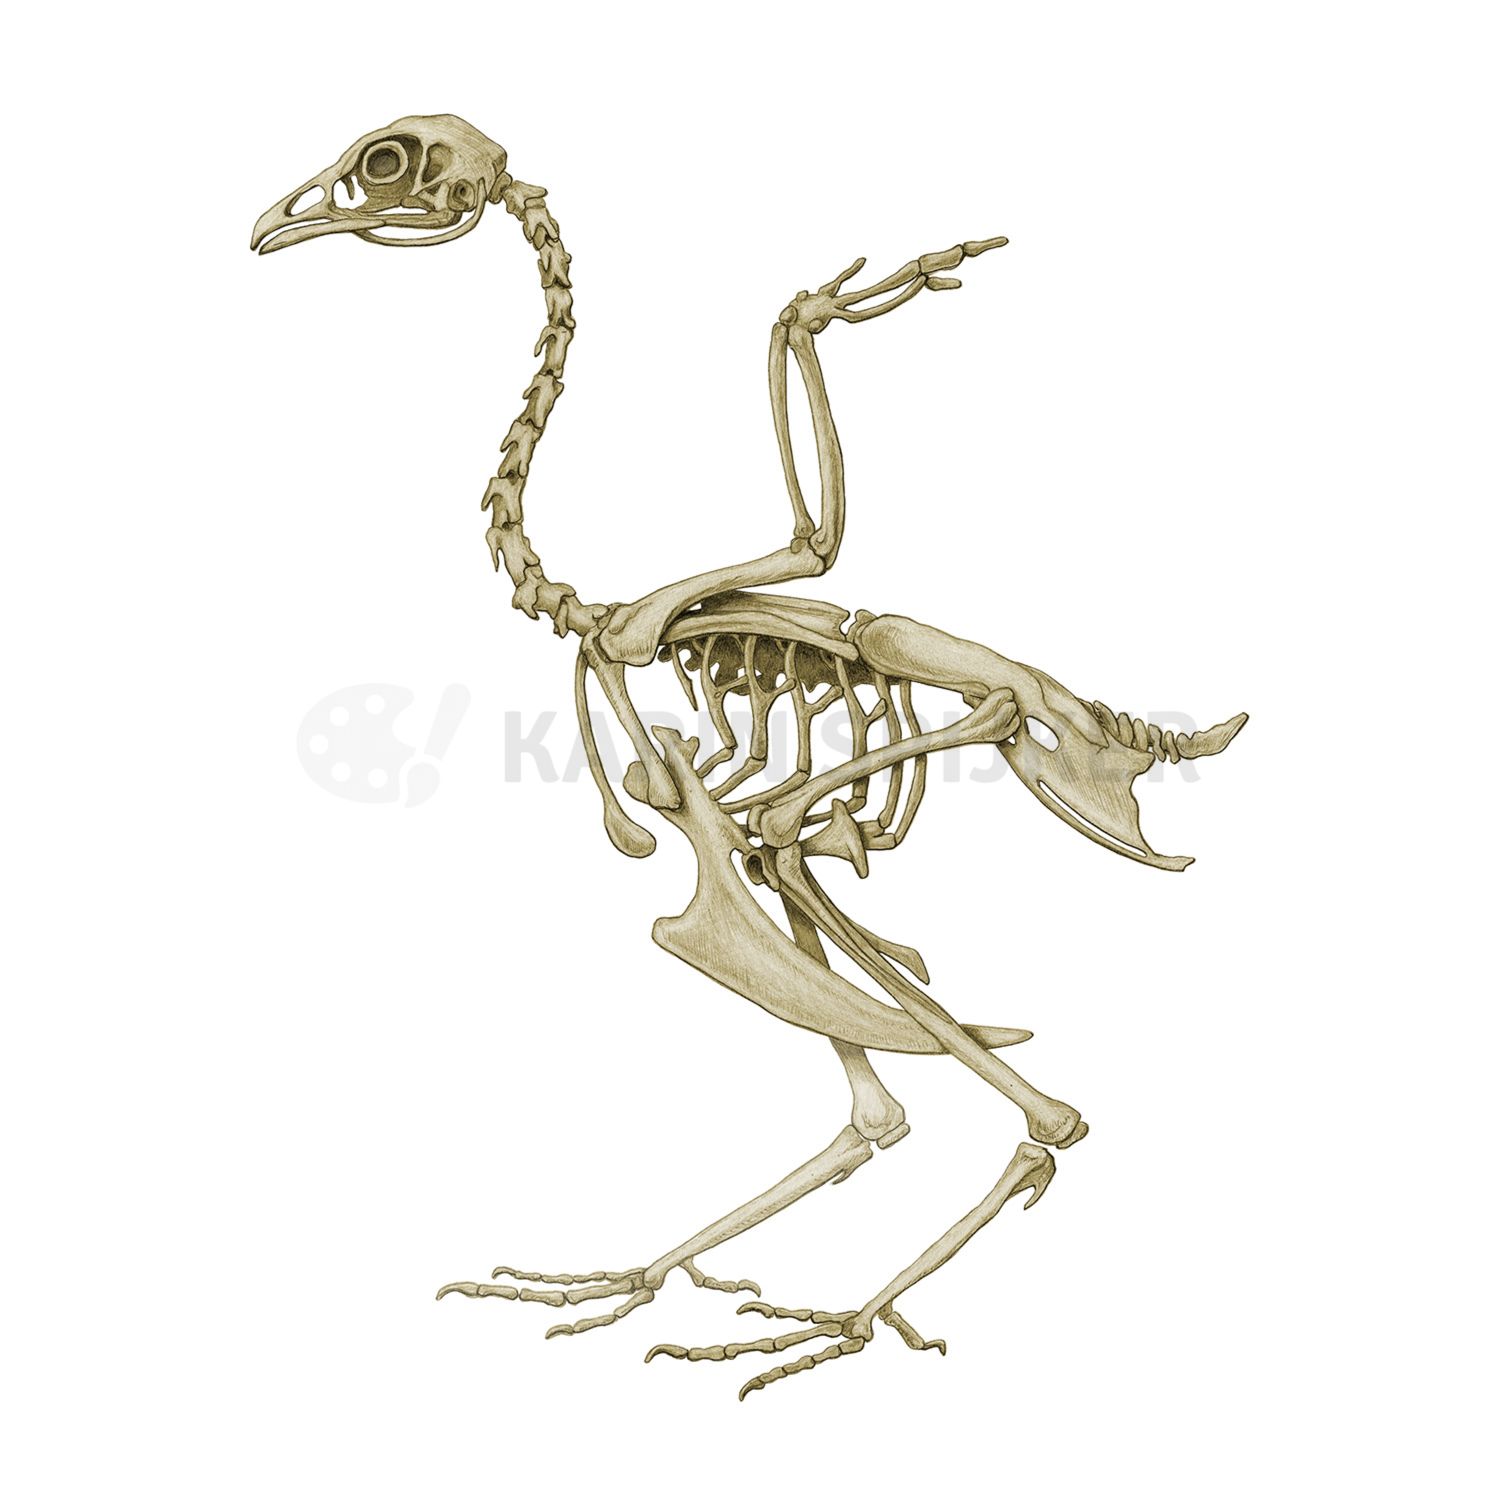 Chicken skeleton